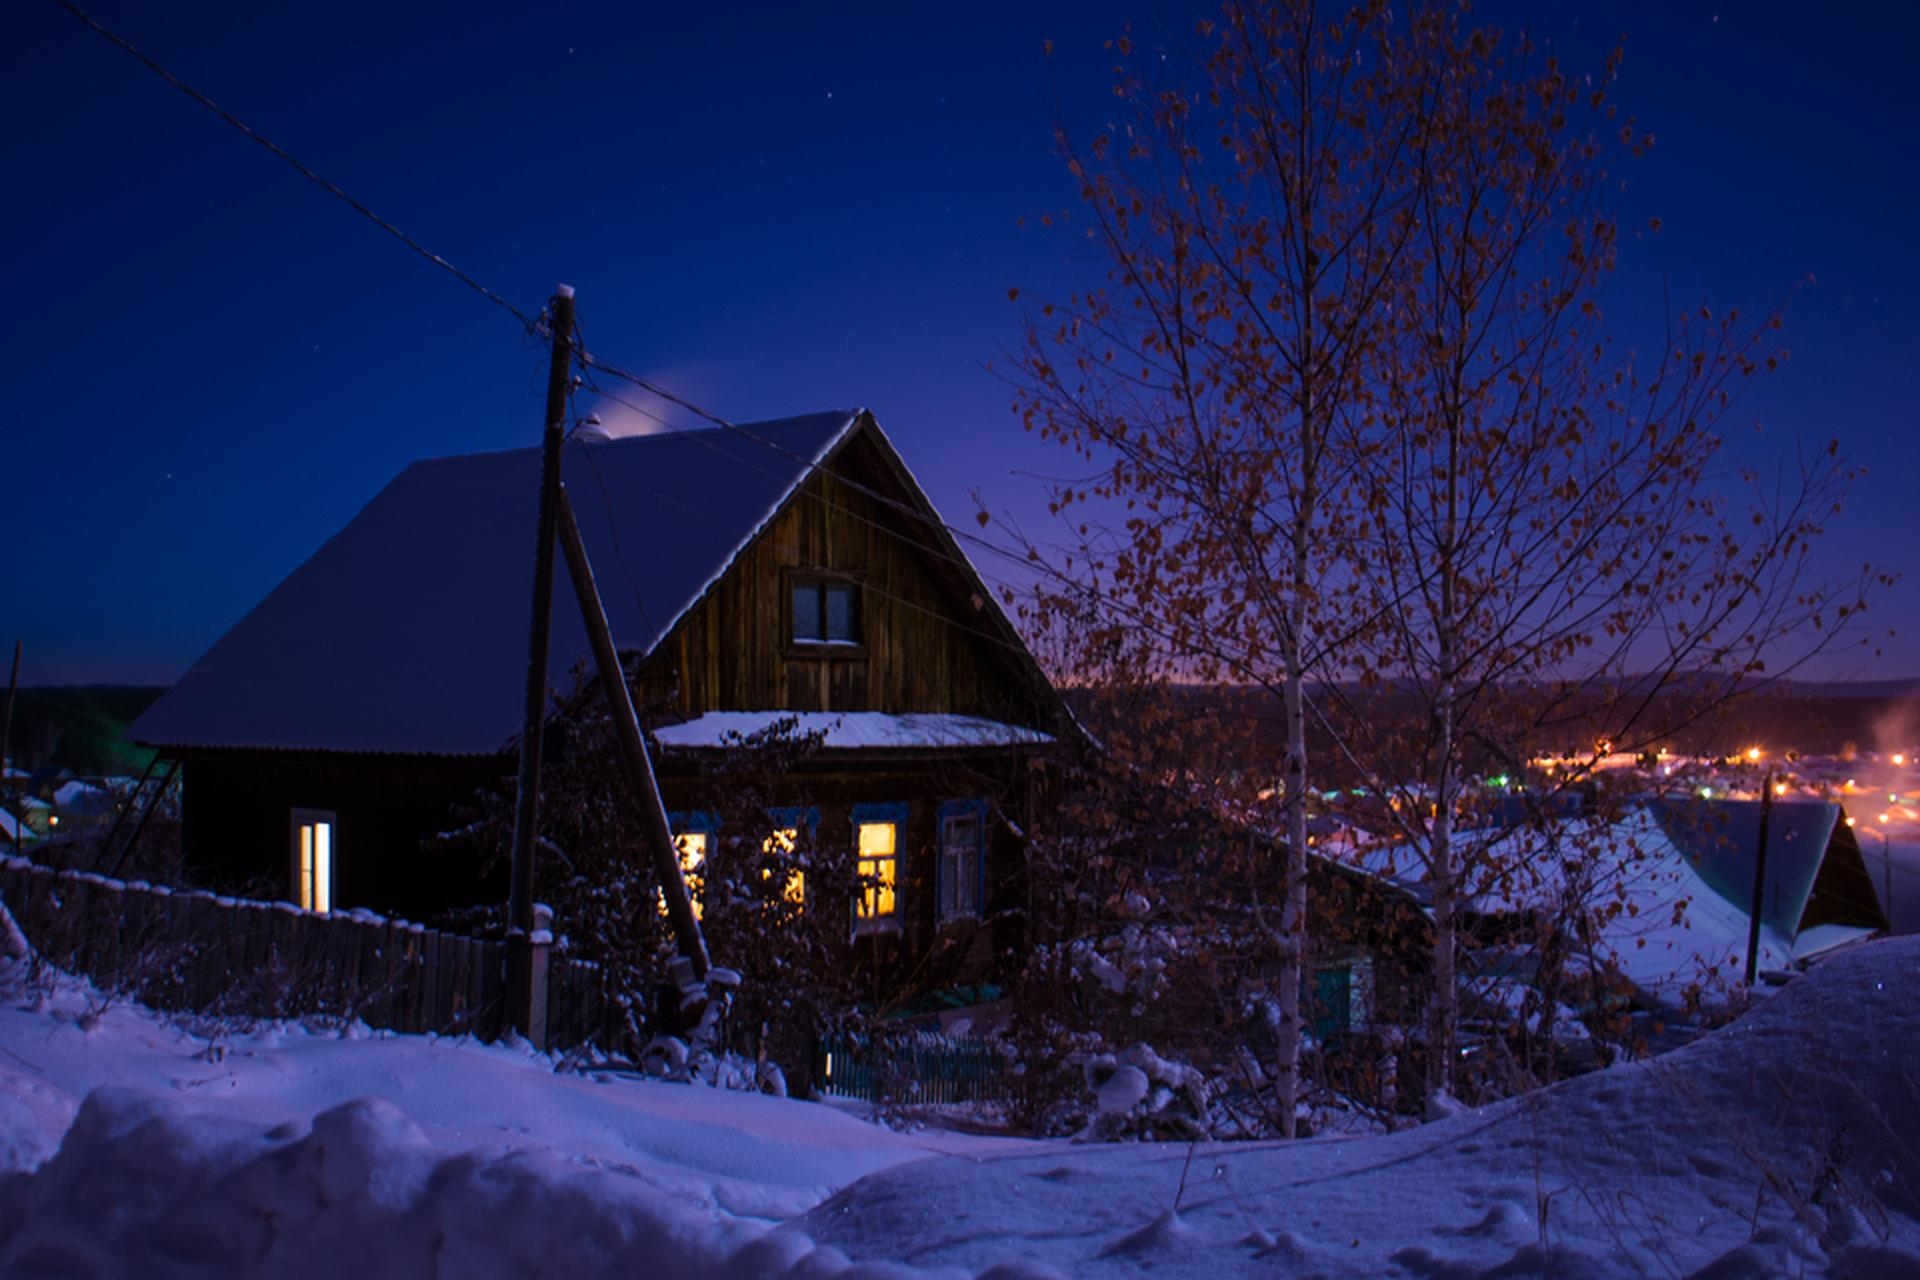 Когда будет вечер в деревне. Ночная деревня. Деревня зимой. Дом ночью. Зима ночь деревня.